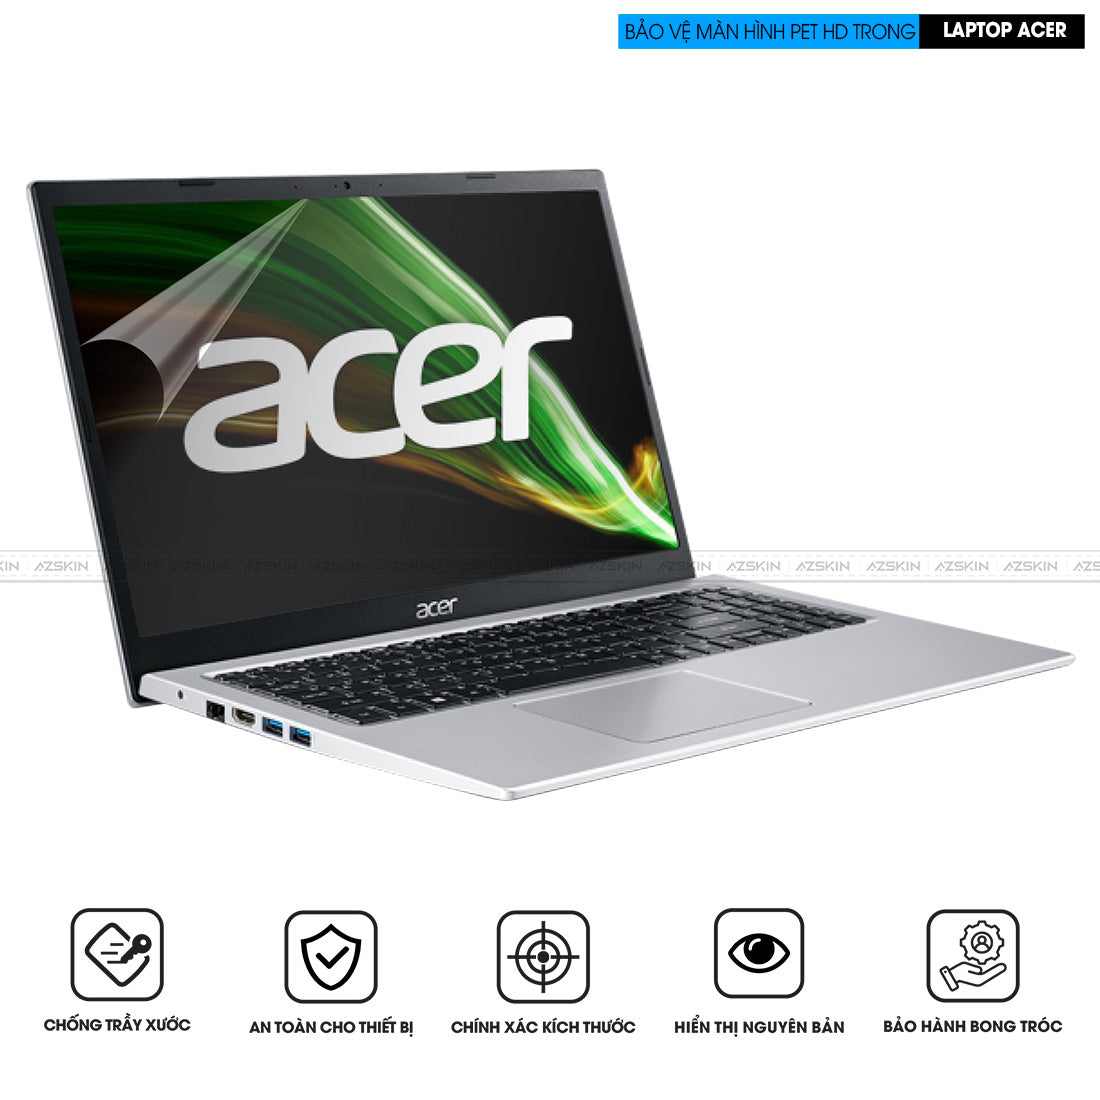 Miếng dán màn hình Laptop Acer PET HD trong suốt bóng